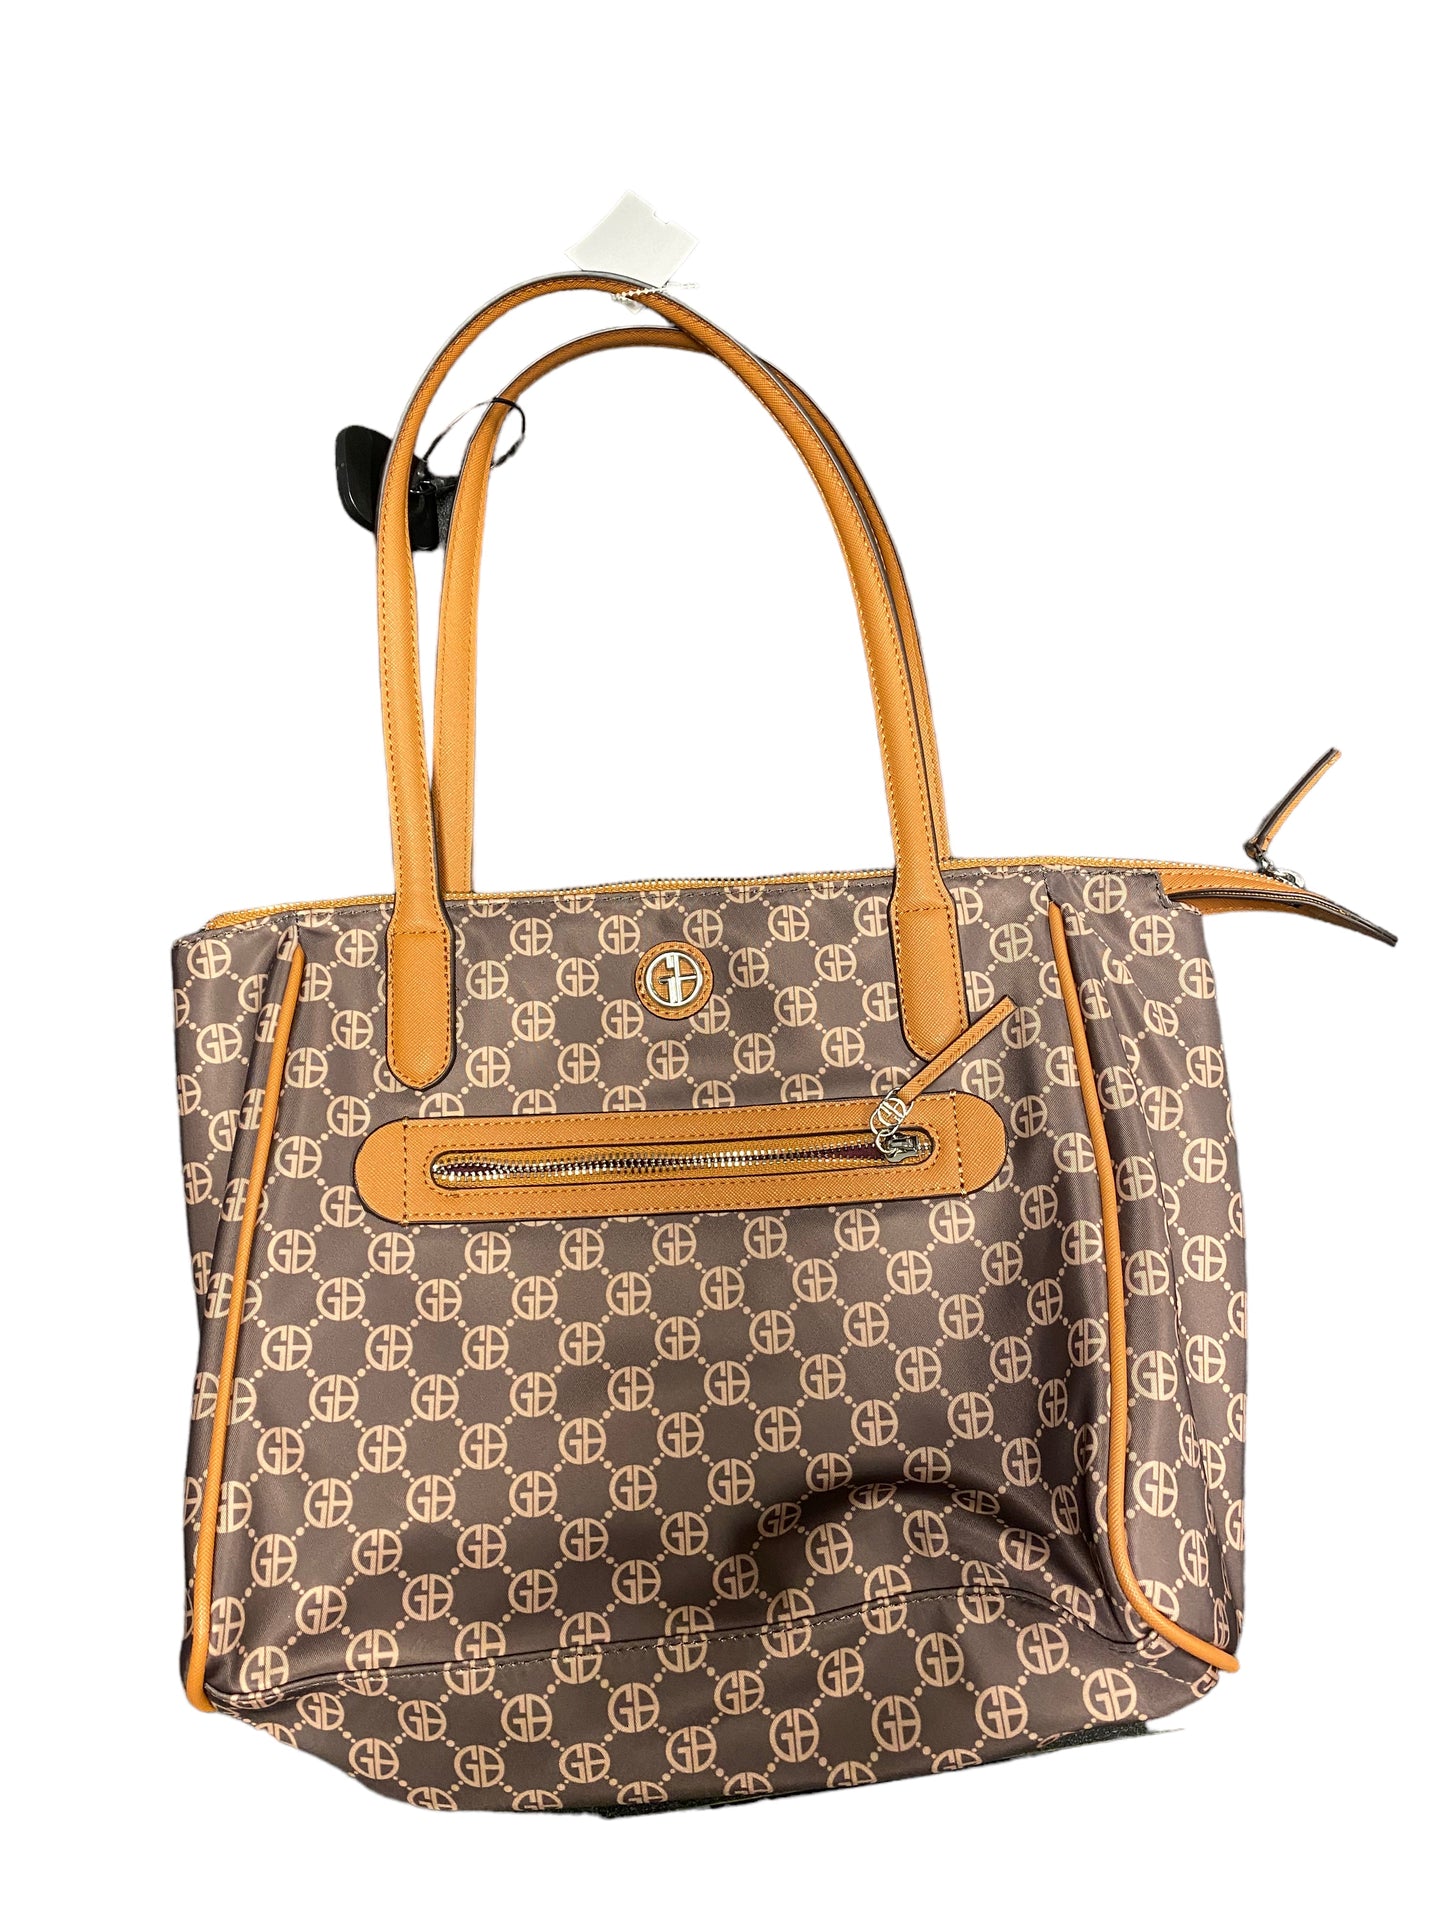 Handbag Giani Bernini, Size Medium